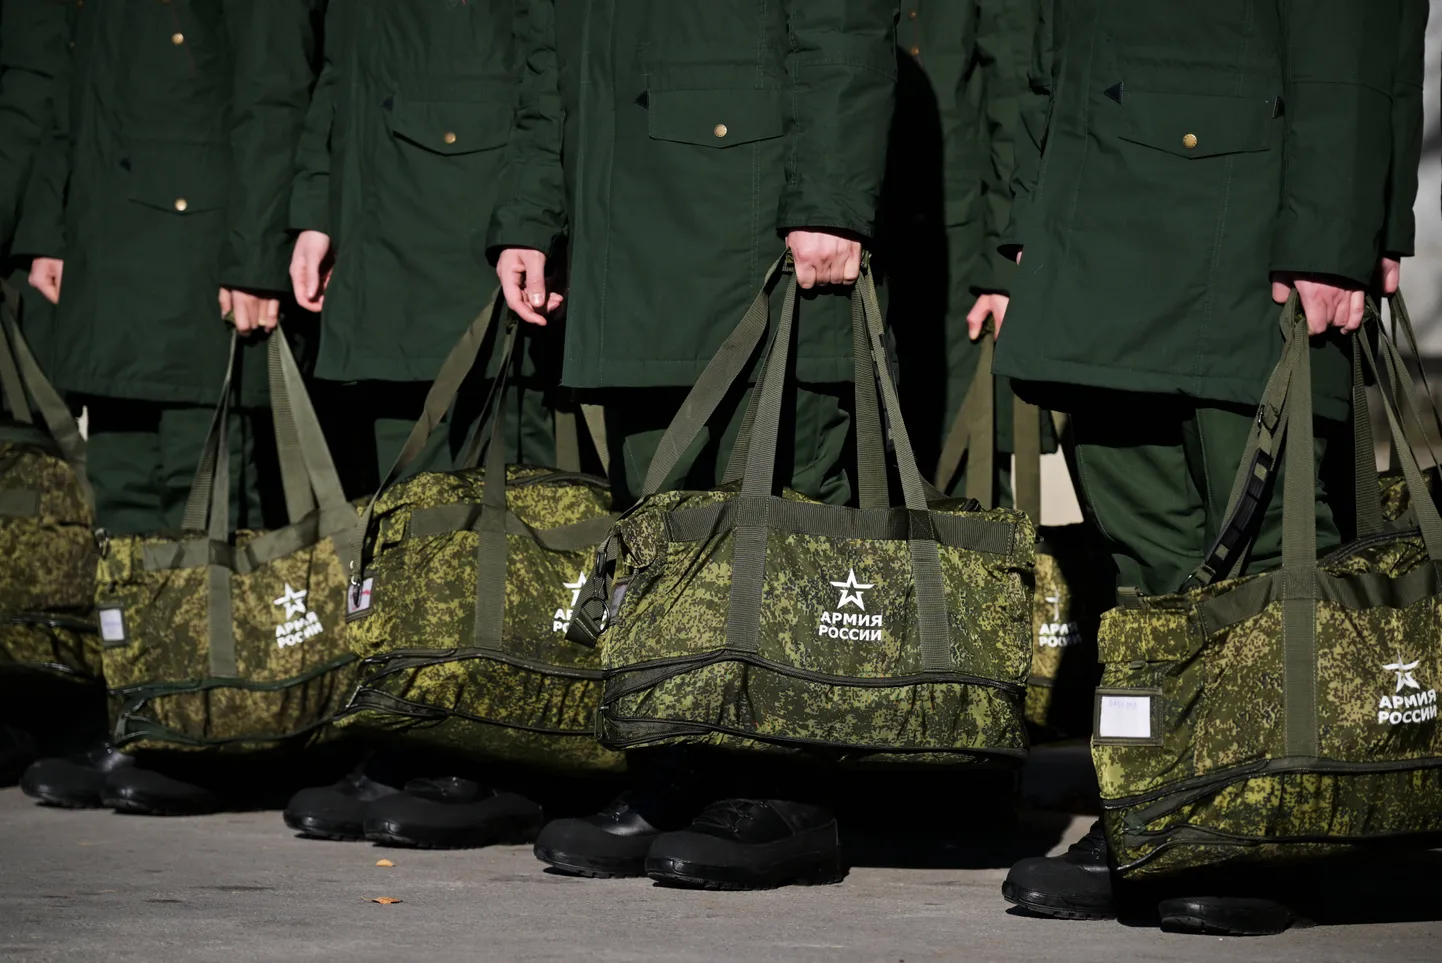 Vene värvatud ootavad sõjaväeteenistusse toimetamist.